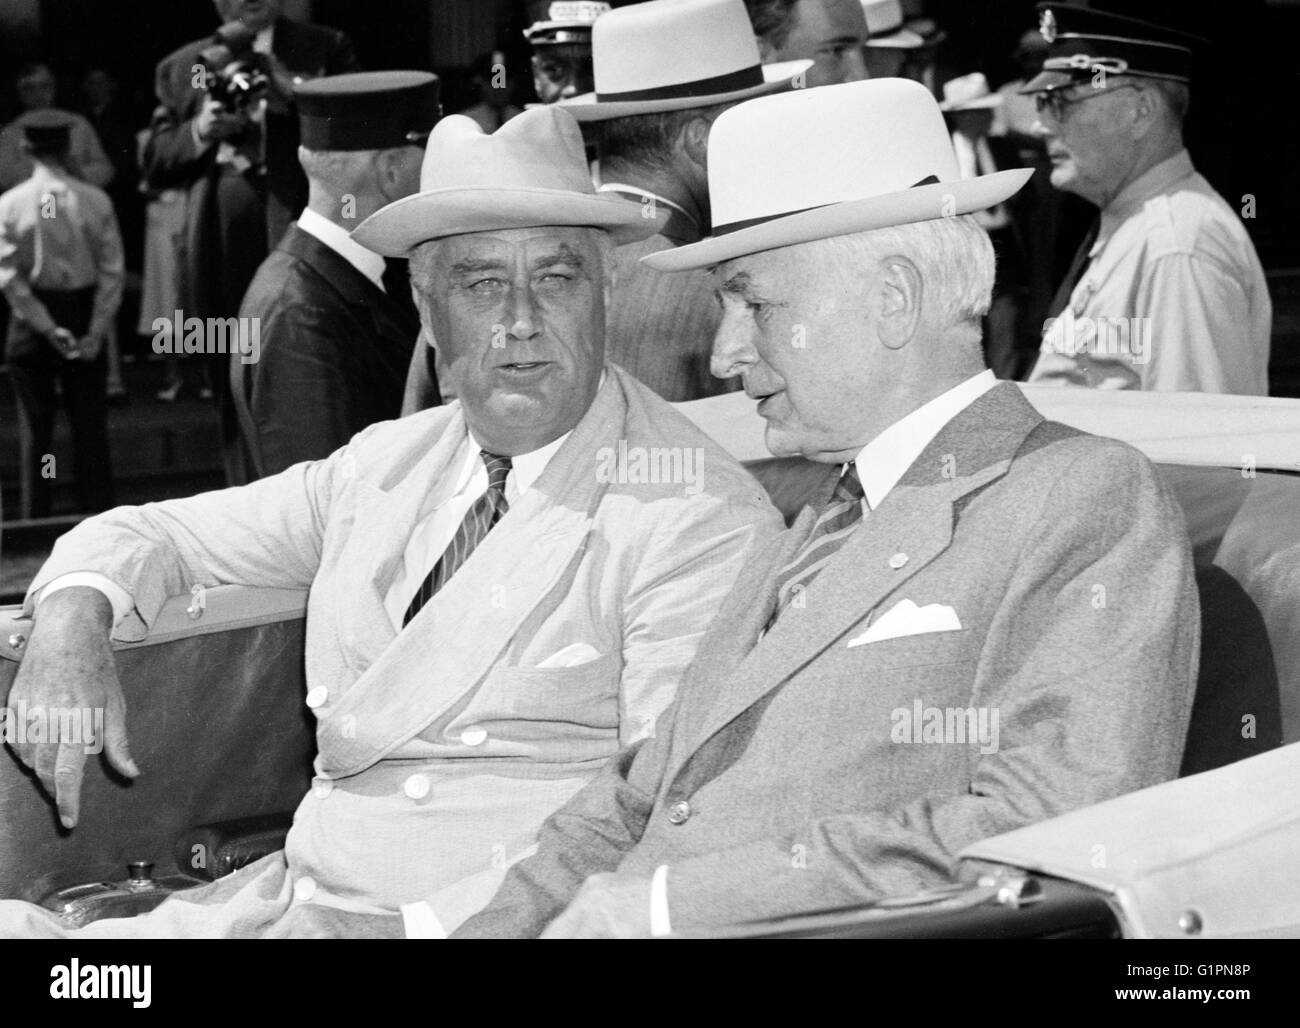 ROOSEVELT E HULL, 1939. Il presidente Franklin Delano Roosevelt e il Segretario di Stato Cordell Hull a Washington D.C. Fotografia, 24 agosto 1939. Foto Stock